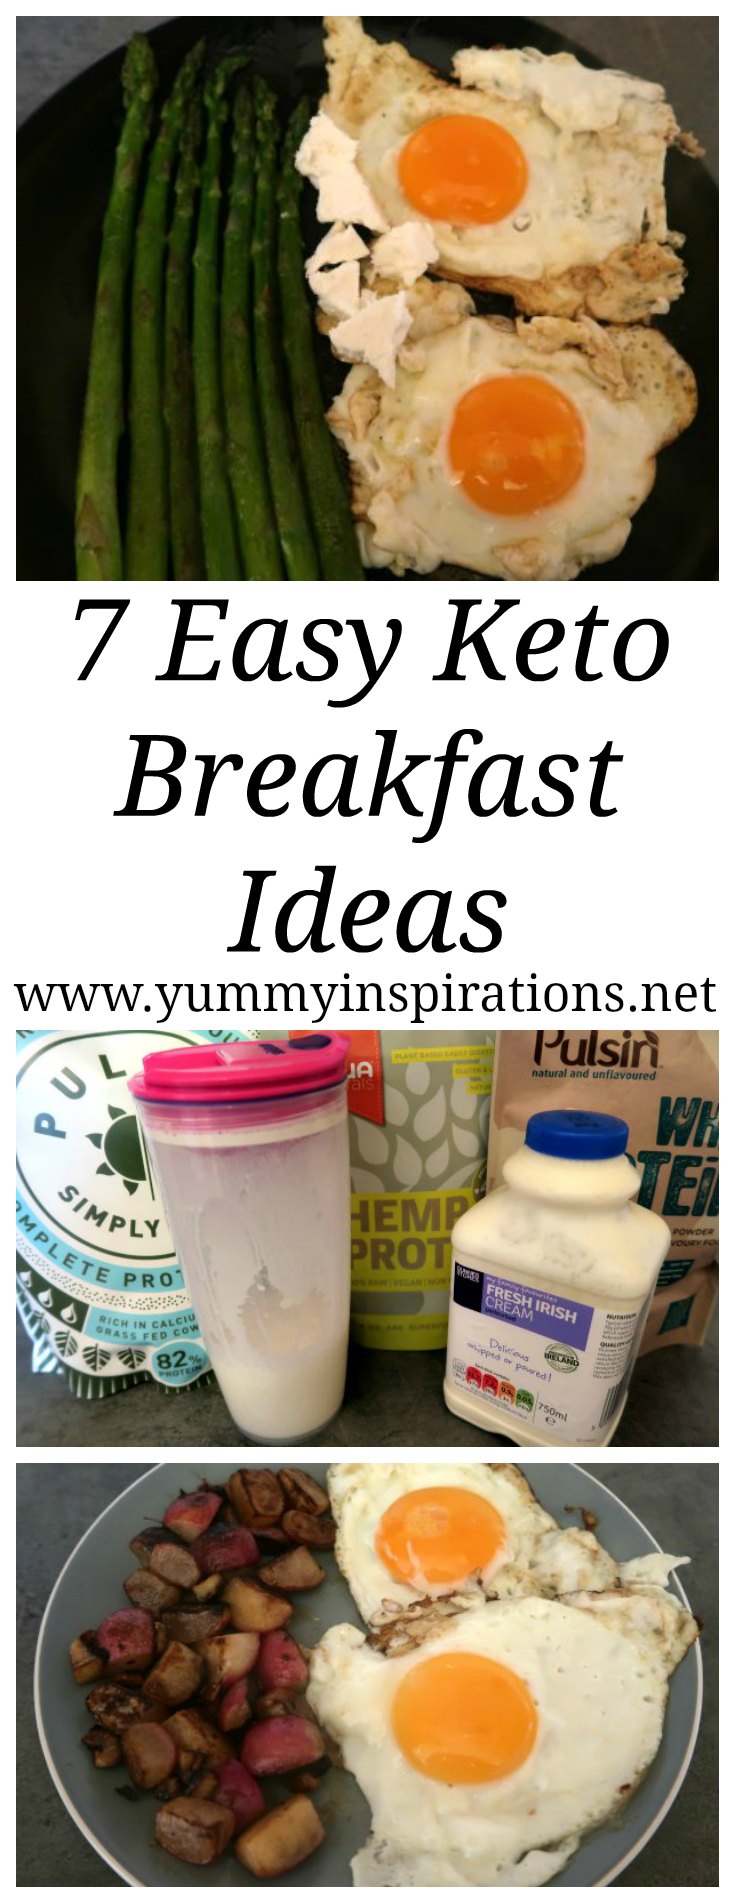 7 Easy Keto Breakfast Ideas - Low Carb & Ketogenic Diet Breakfasts